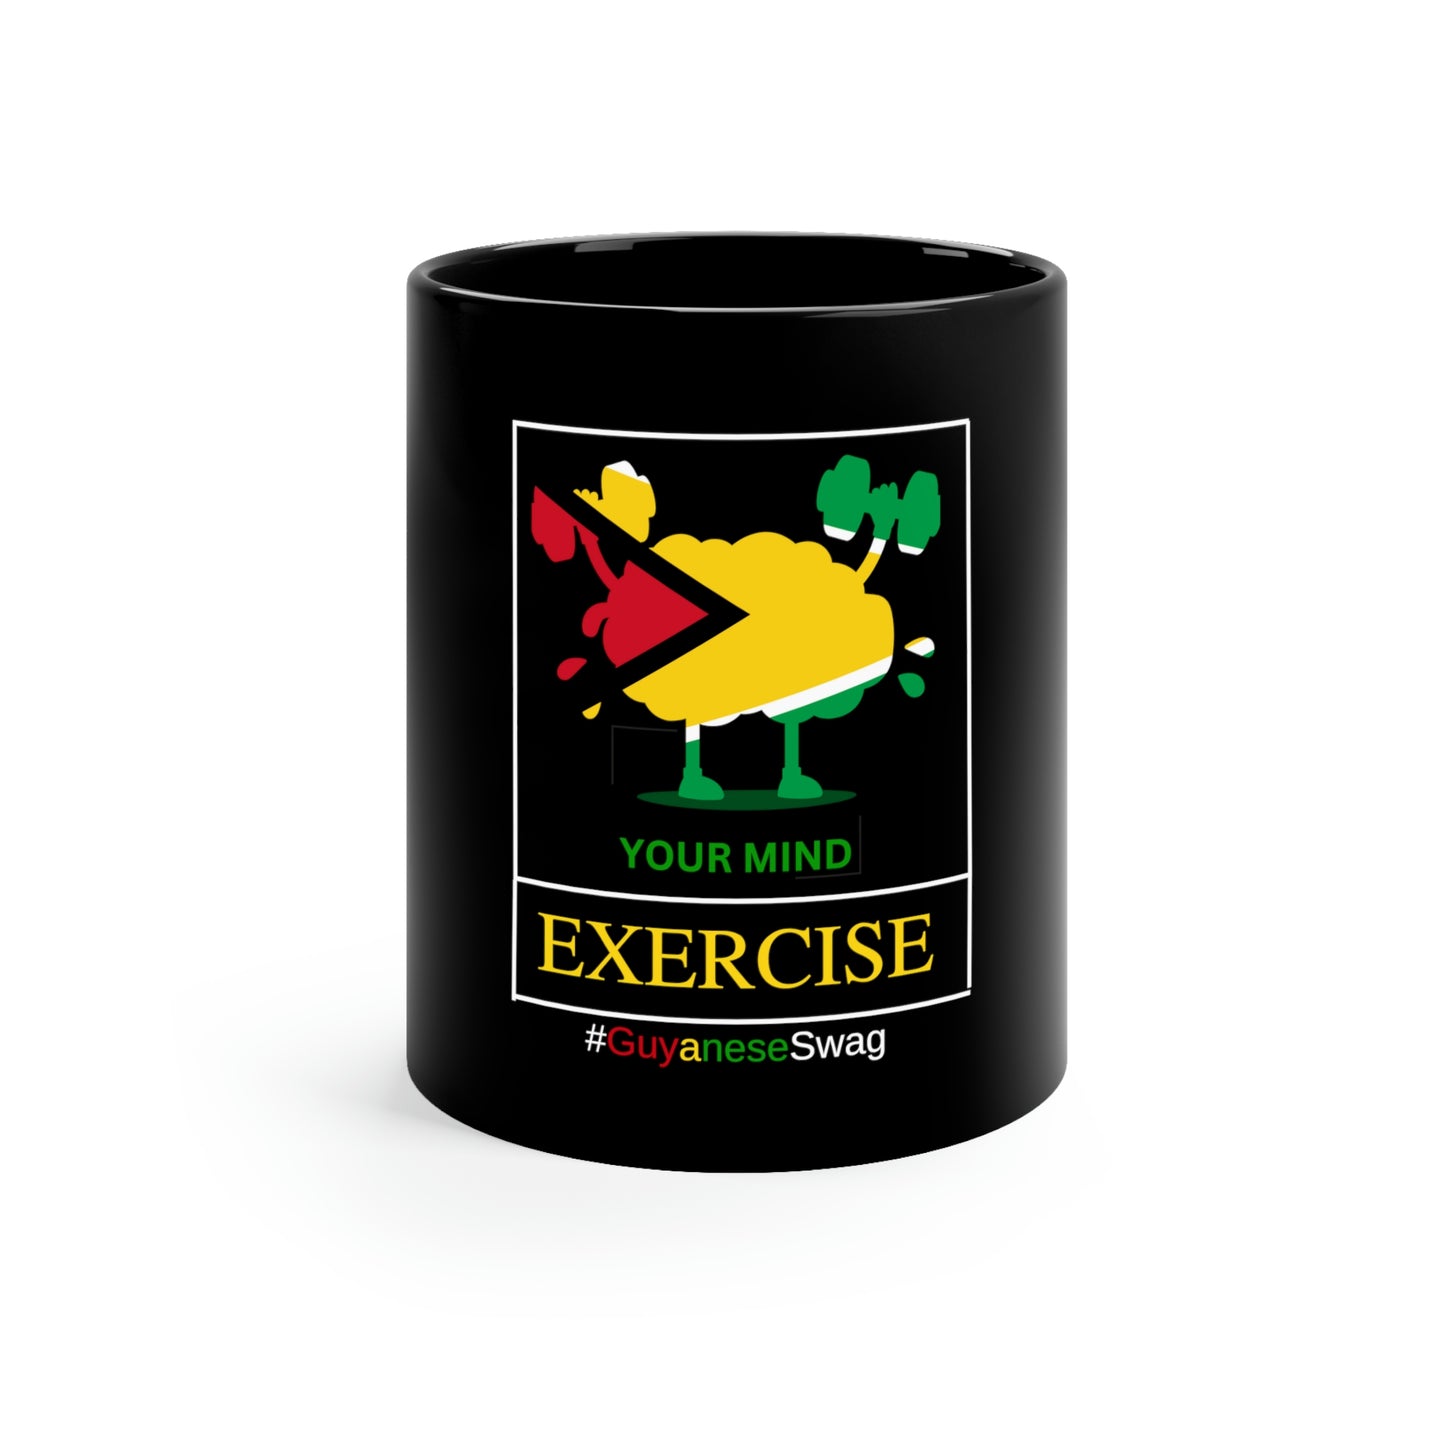 "Exercise Your Mind" 11oz Black Mug by Guyanese Swag.